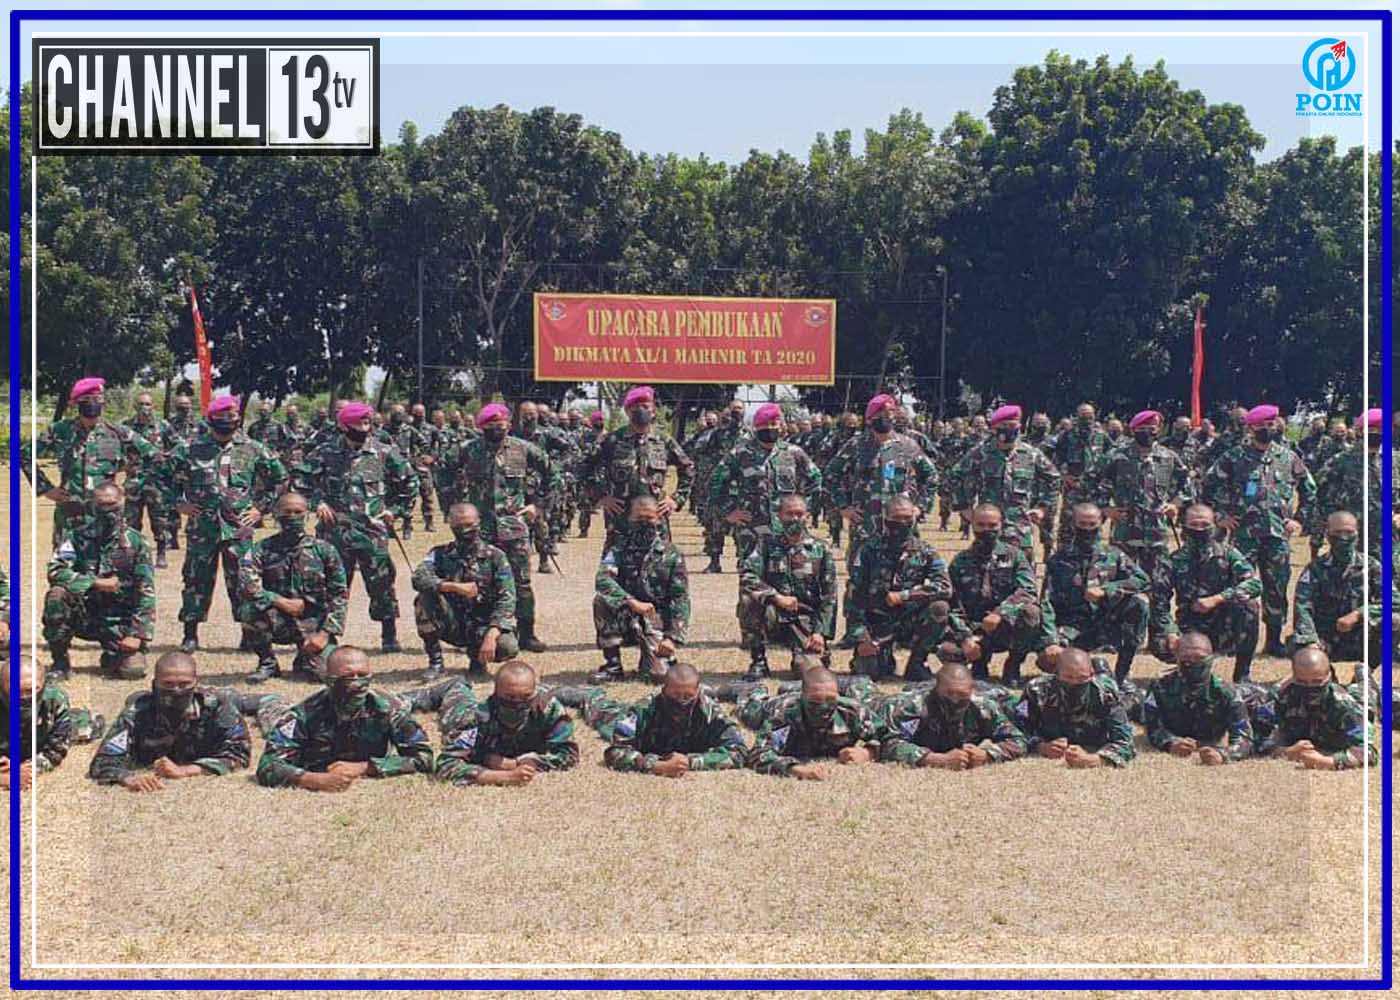 Sejarah Baru Kodikmar Kodiklatal Buka Pendidikan Dikmata XL/1 Kejuruan Marinir di Grati Kabupaten Pasuruan